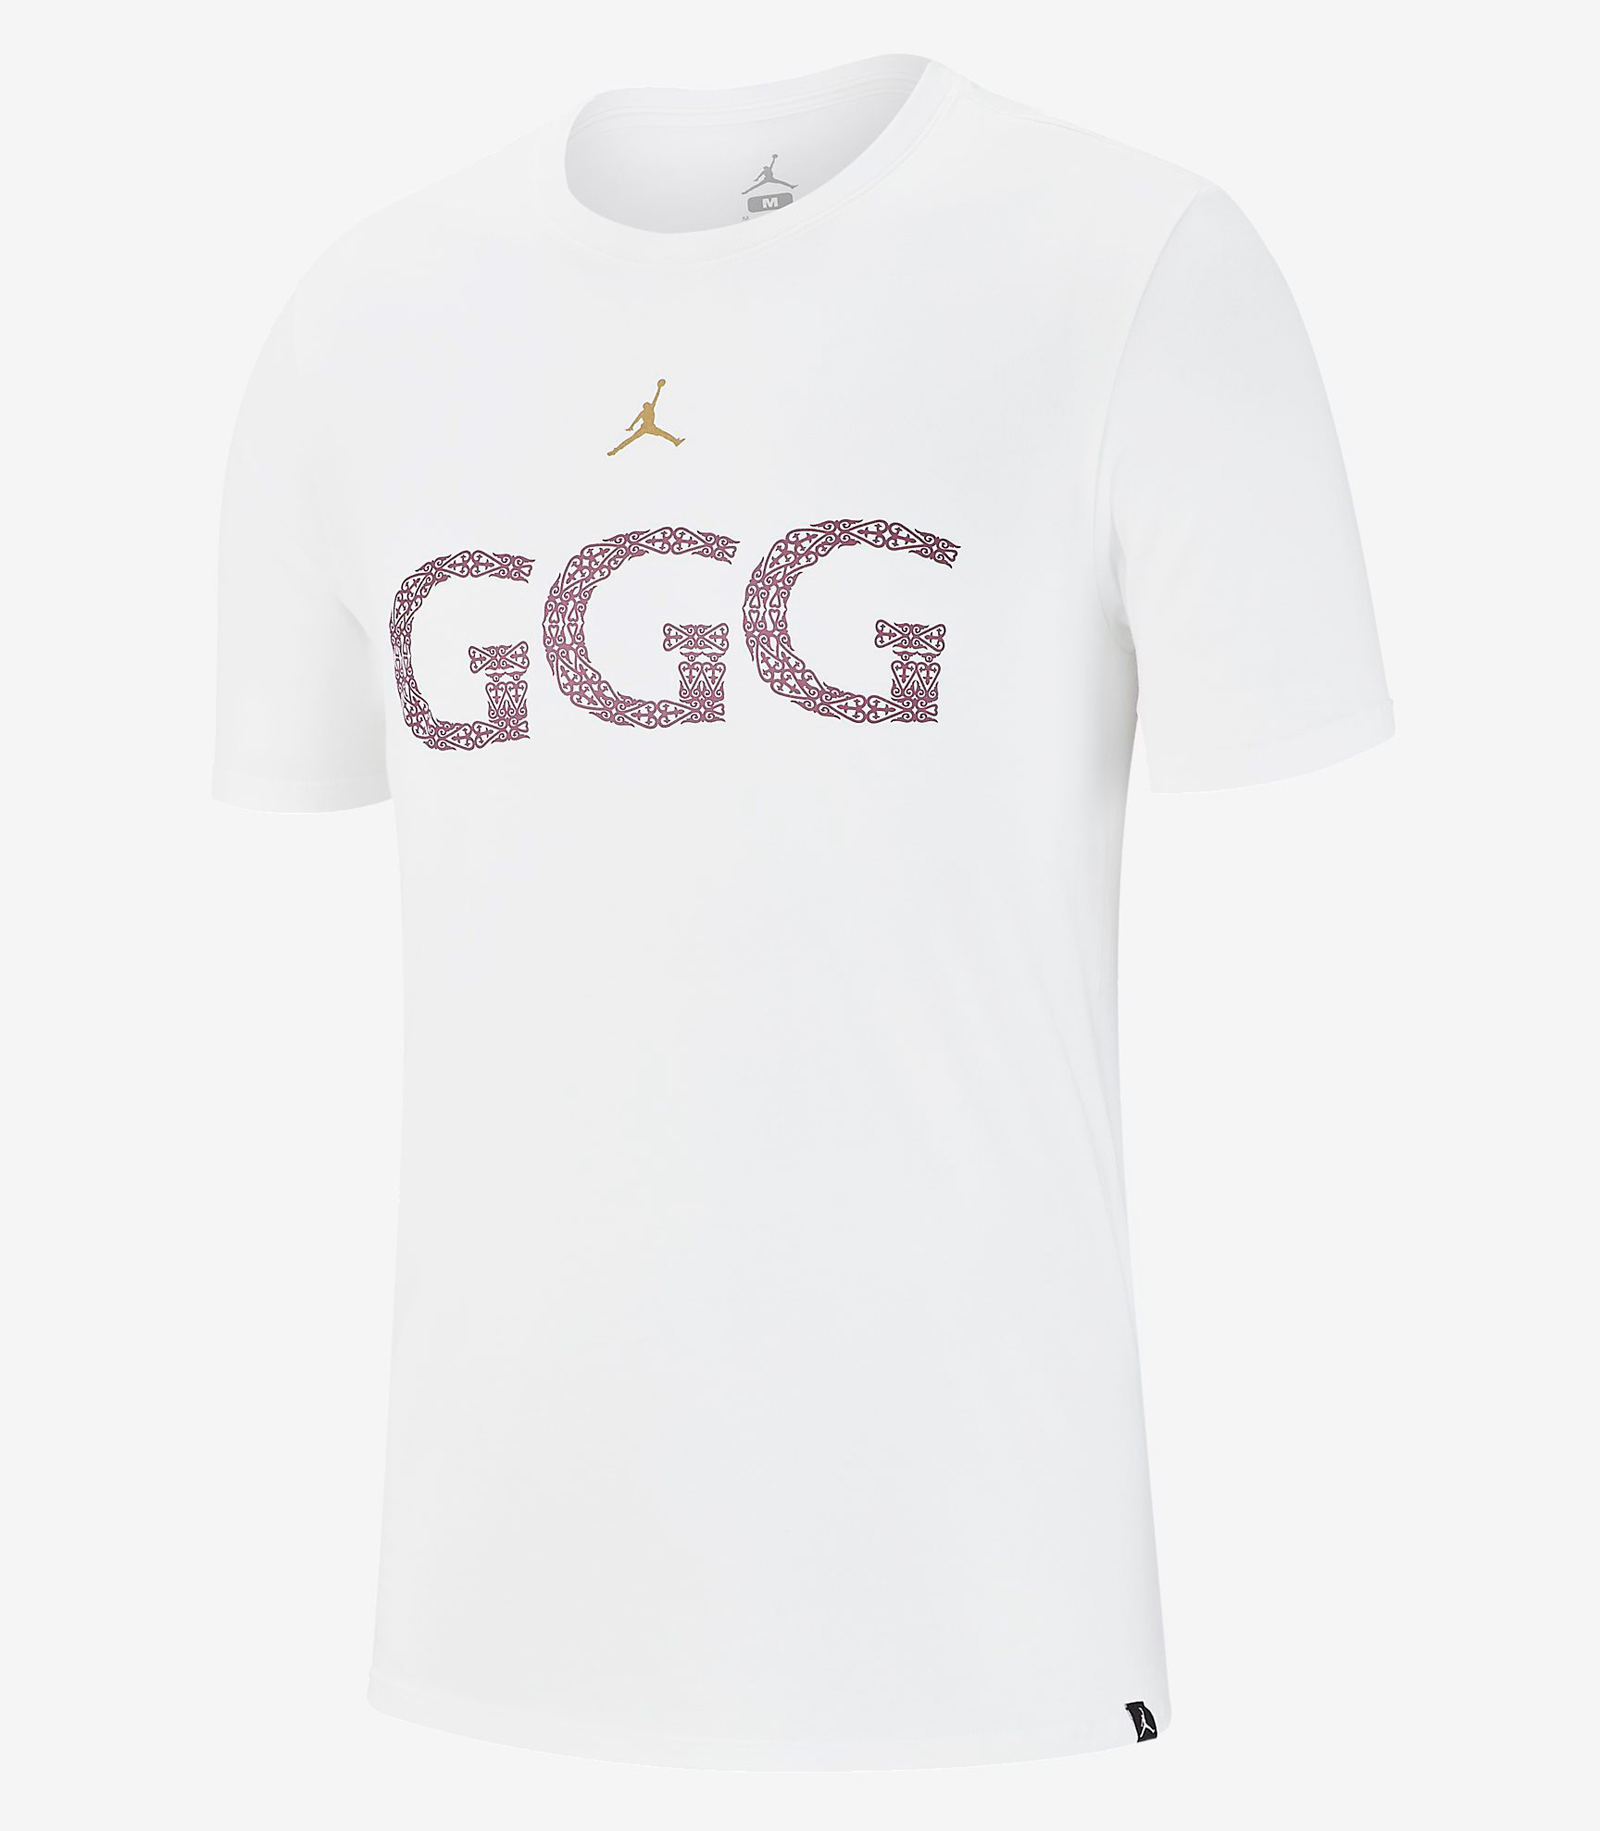 GGG Wearing Jordan Brand Clothing for Canelo vs Golovkin 3